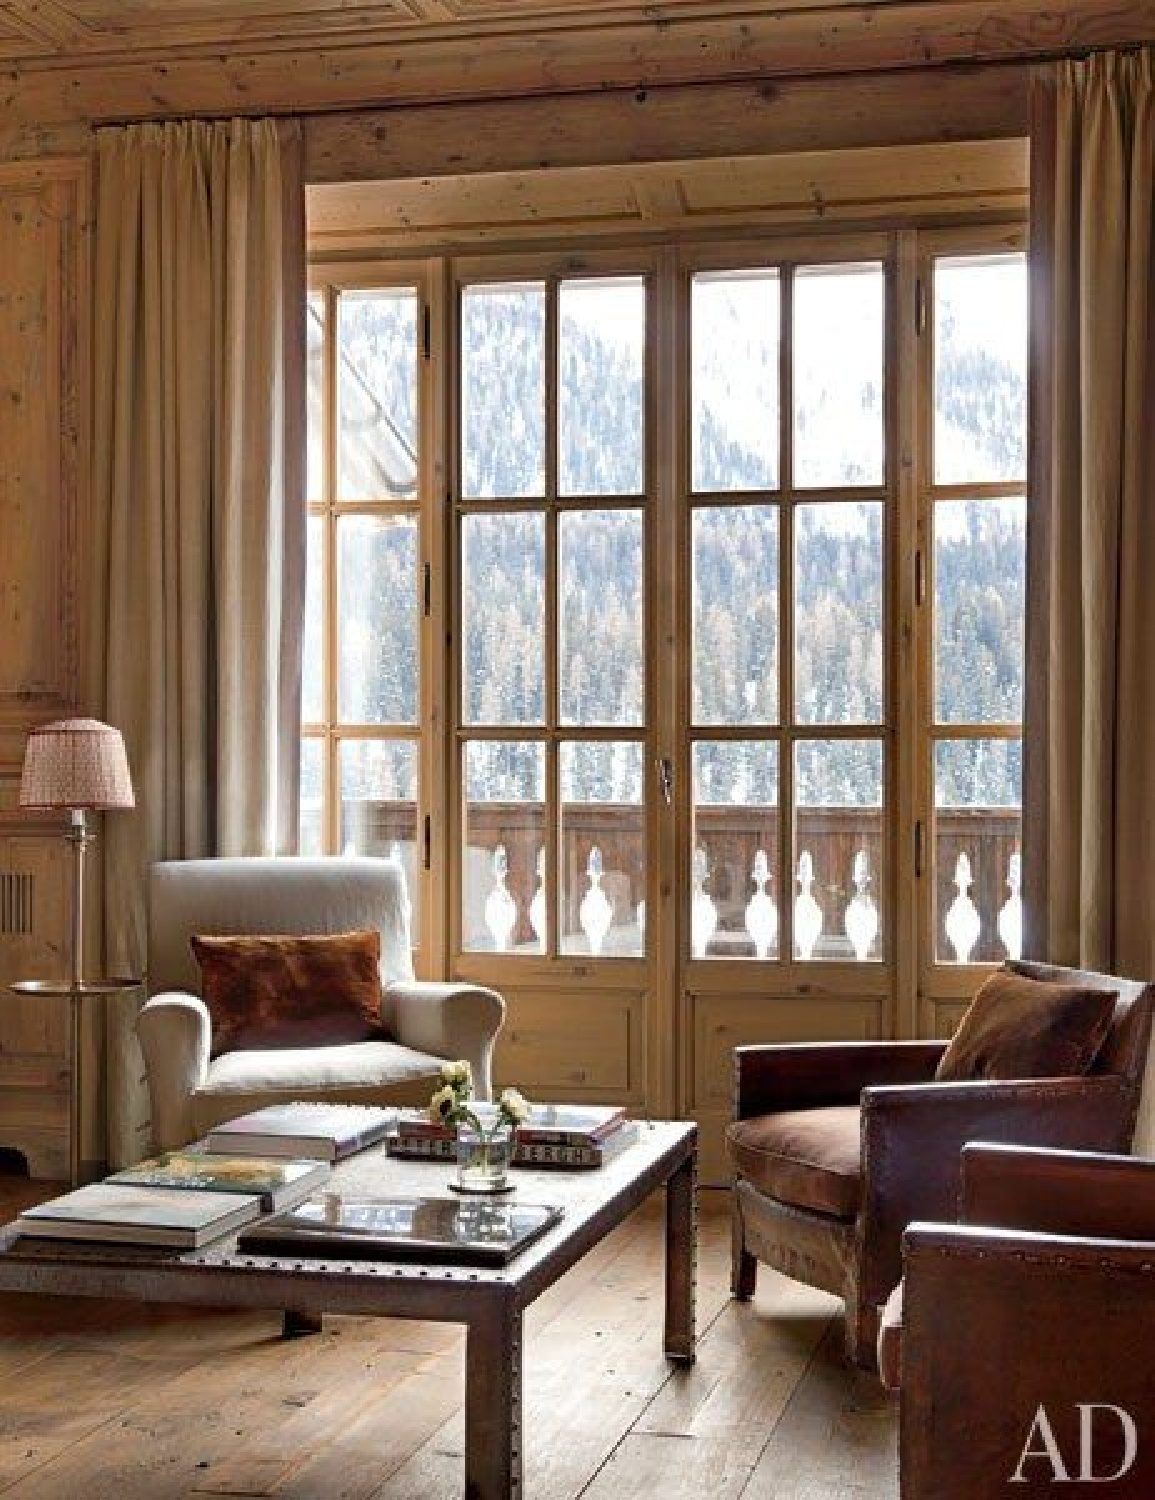 Studio Peregalli designed elegant rustic Swiss Alps interior in Architectural Digest. #europeancottage #warmcozyinteriors #rusticelegance #europeancountry